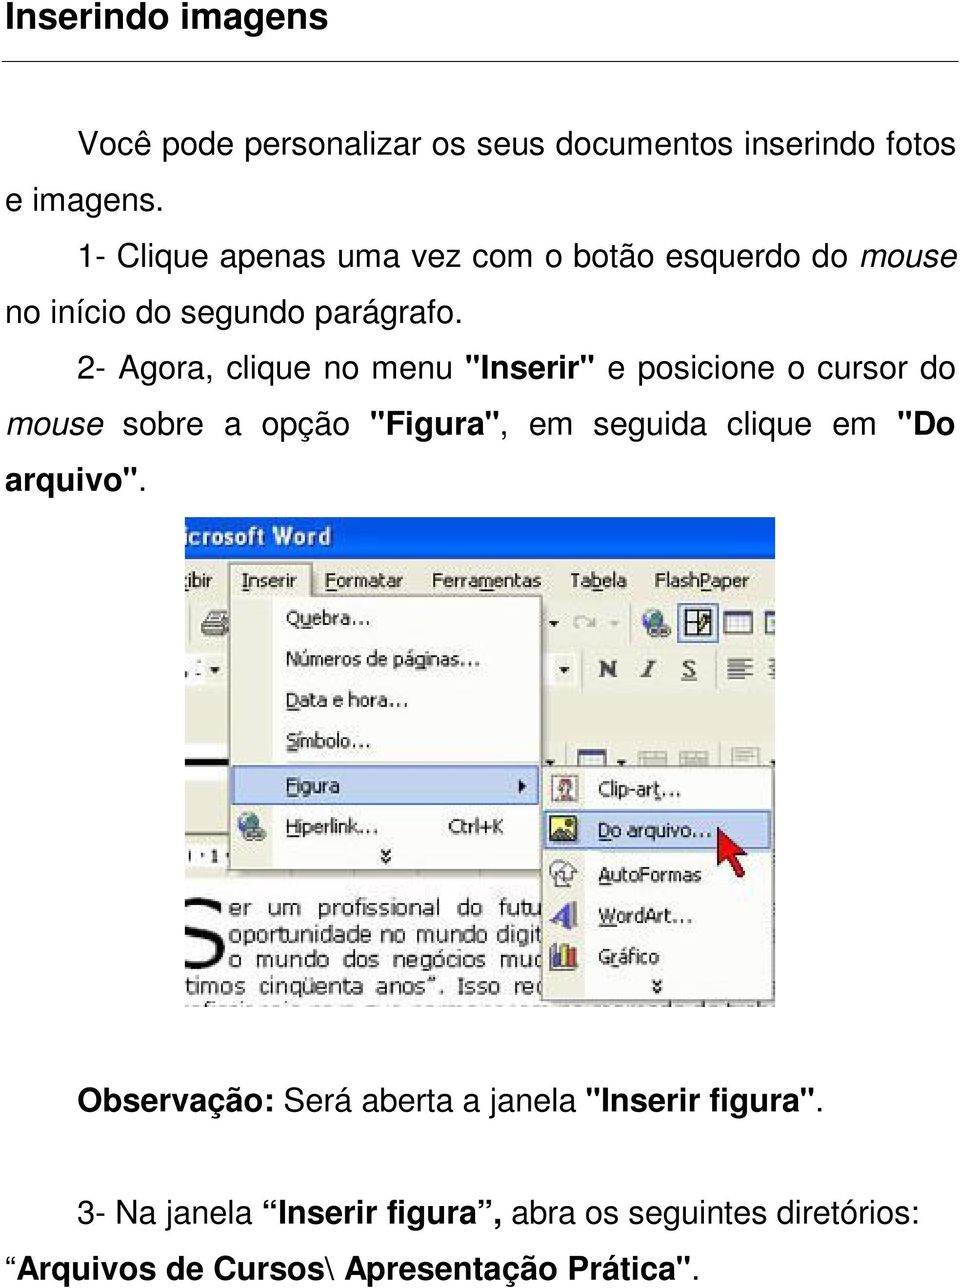 2- Agora, clique no menu "Inserir" e posicione o cursor do mouse sobre a opção "Figura", em seguida clique em